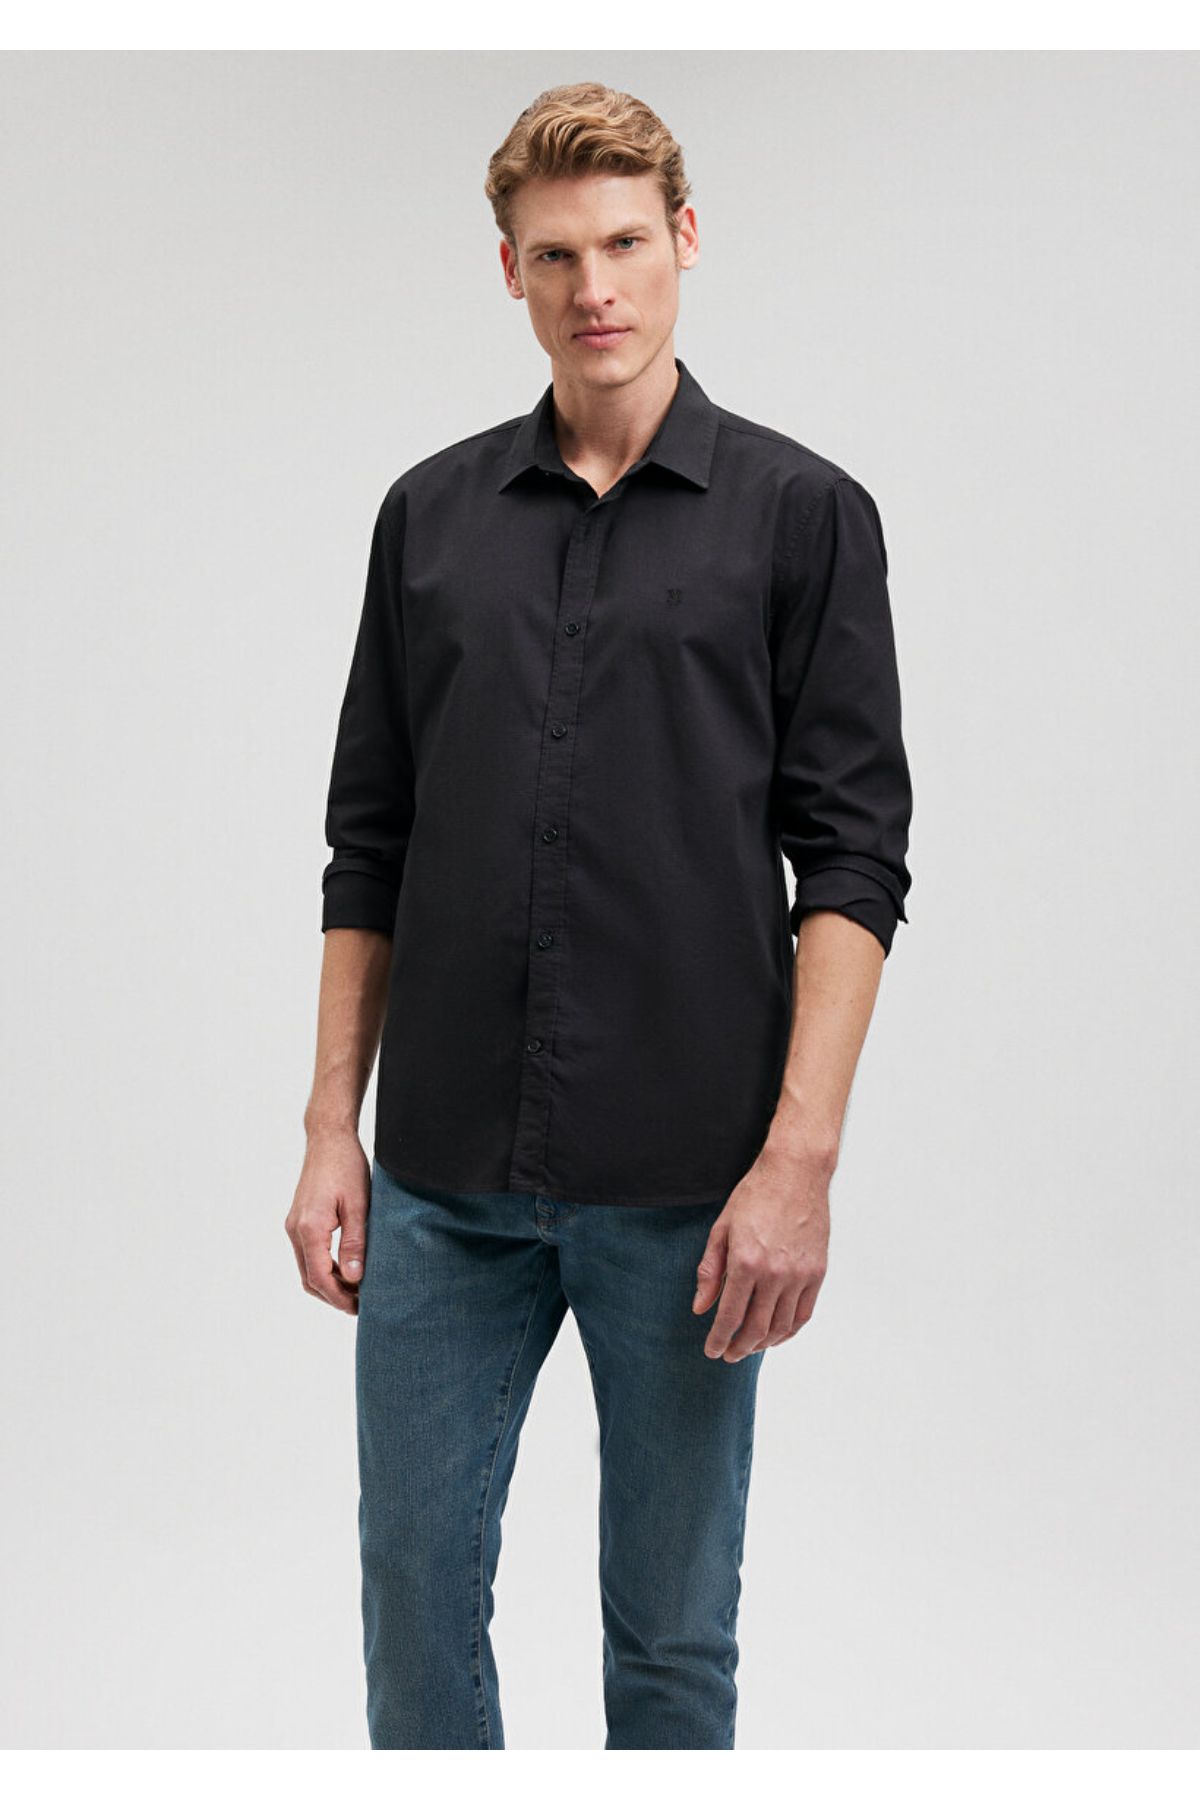 Mavi پیراهن سیاه مردانه M0211012-900